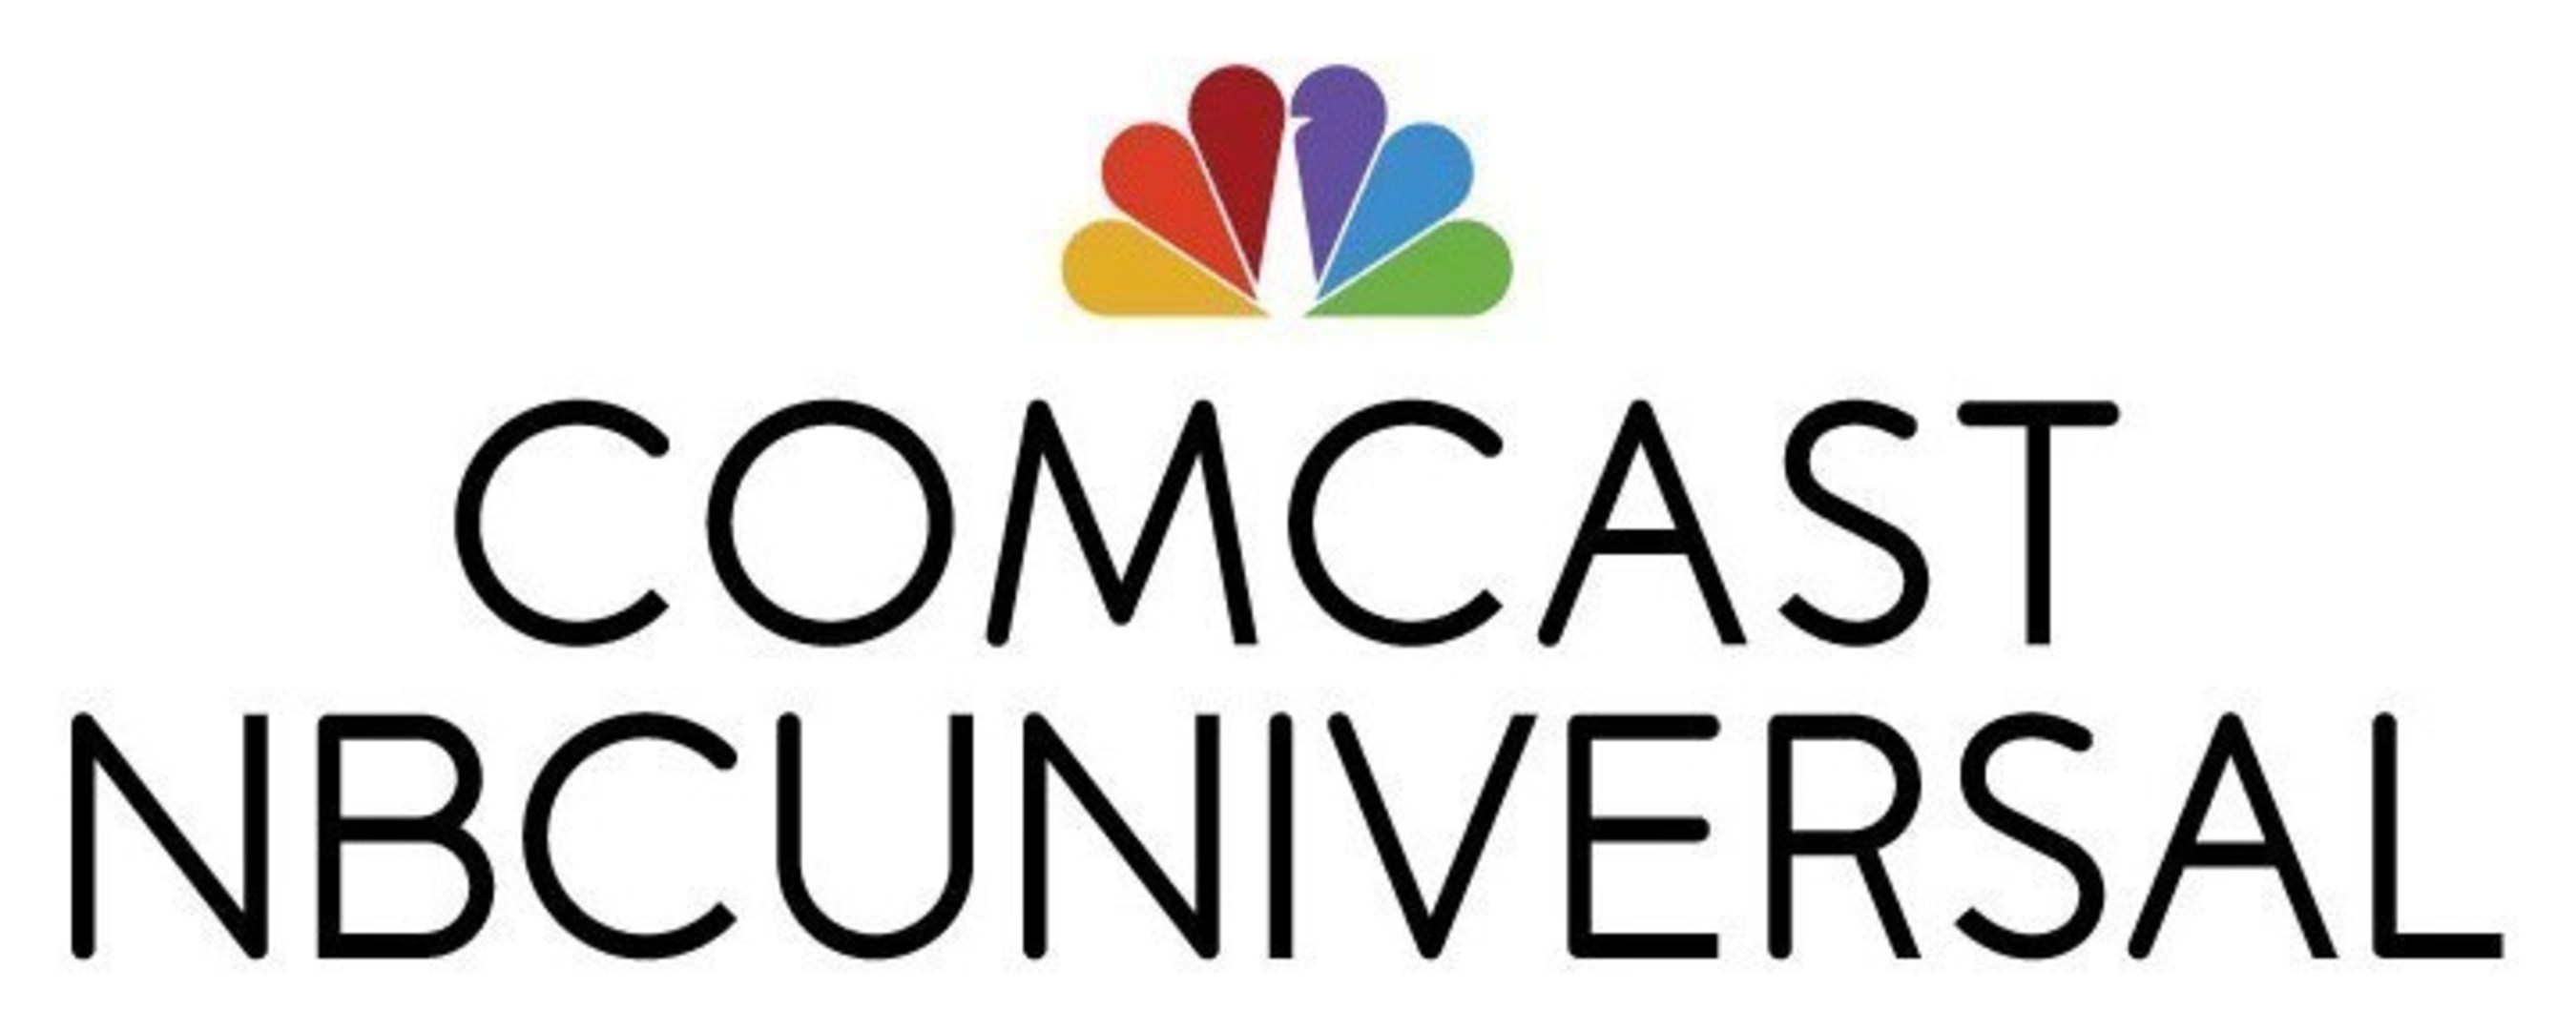 Comcast/NBCUniversal logo